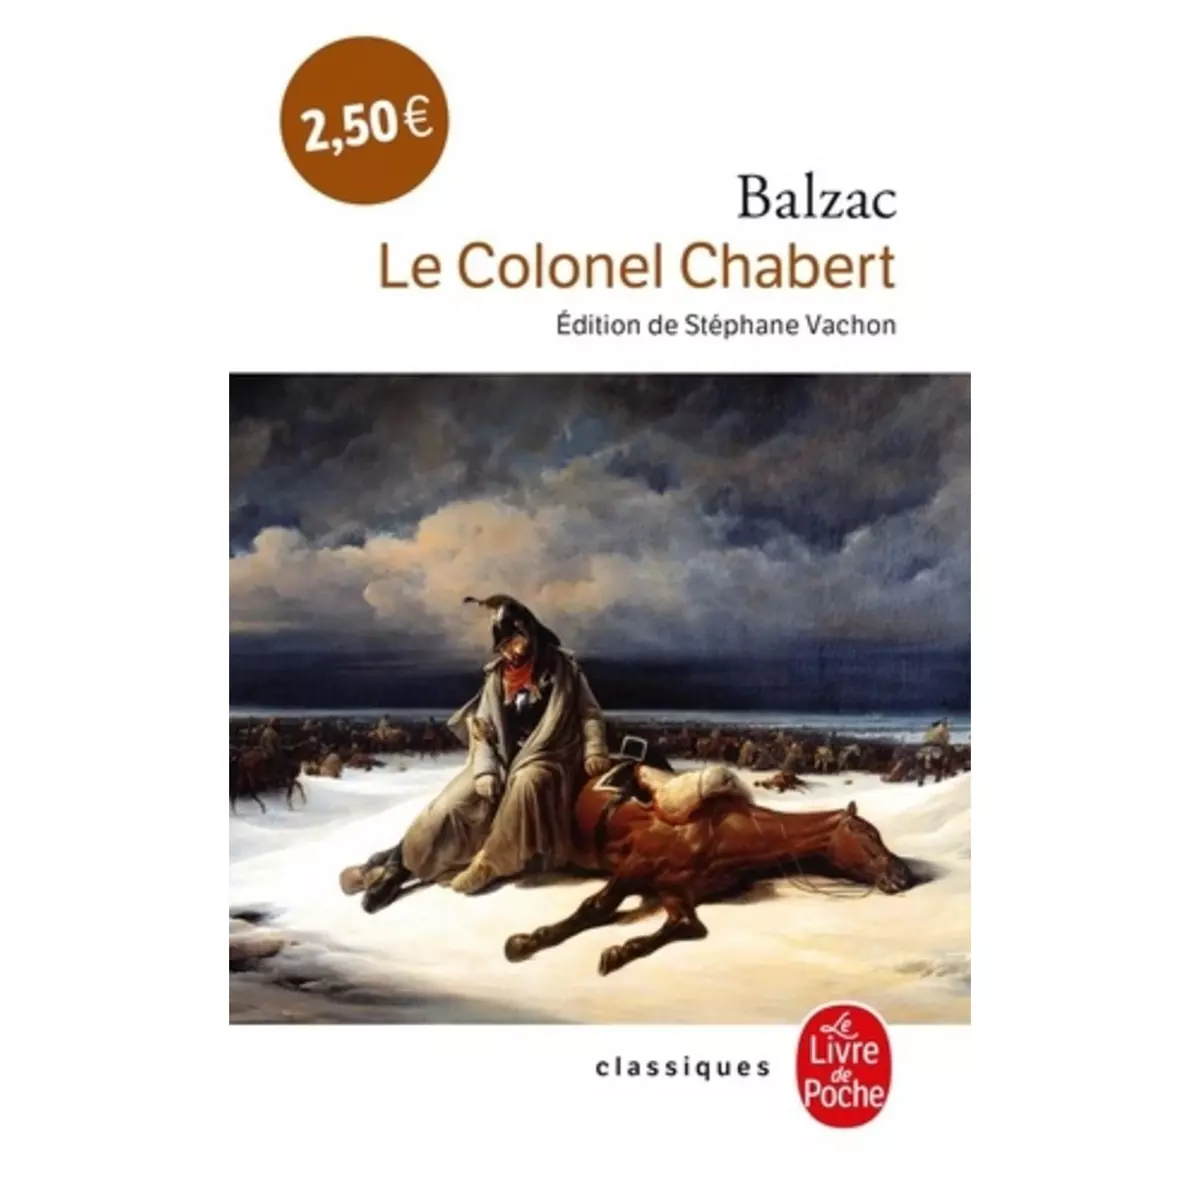  LE COLONEL CHABERT, Balzac Honoré de